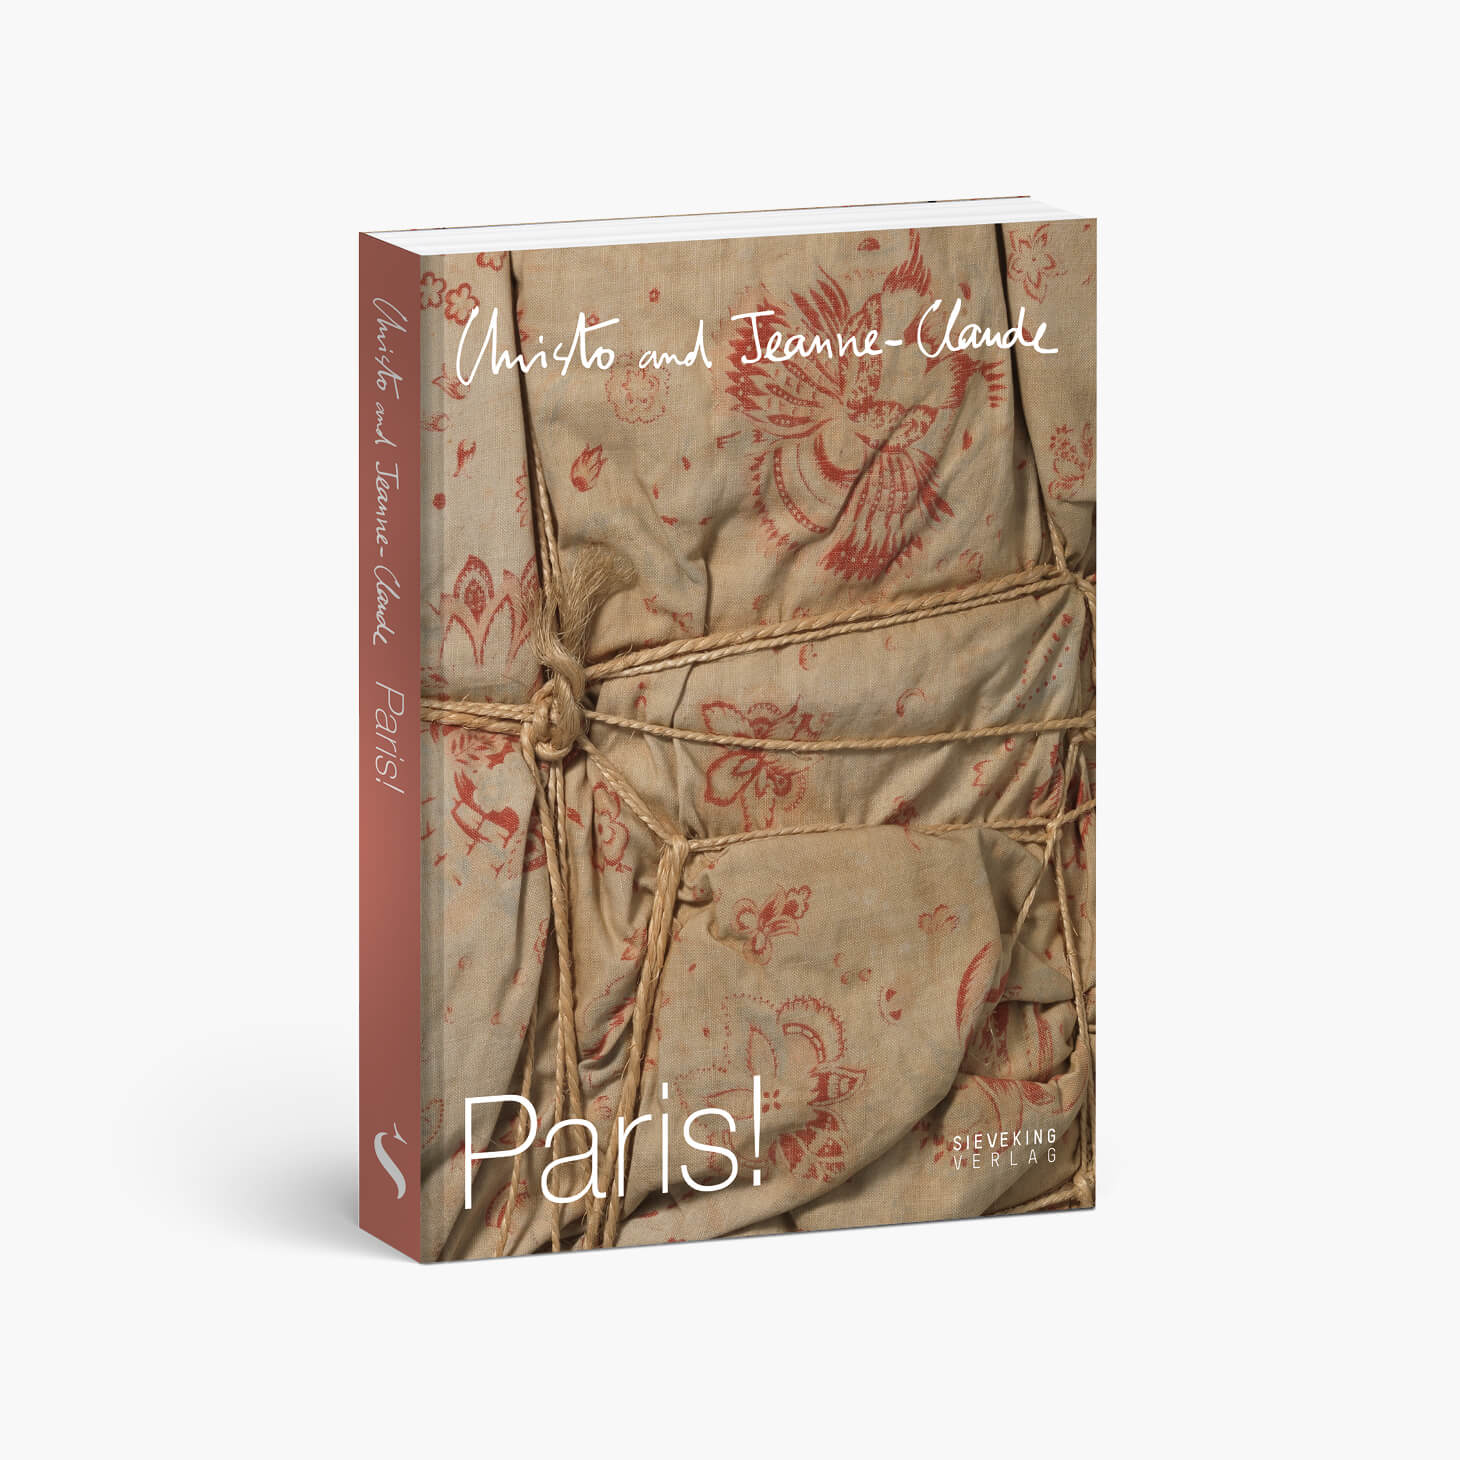 Buchcover von Christo and Jeanne-Claude. Paris!, Sieveking Verlag